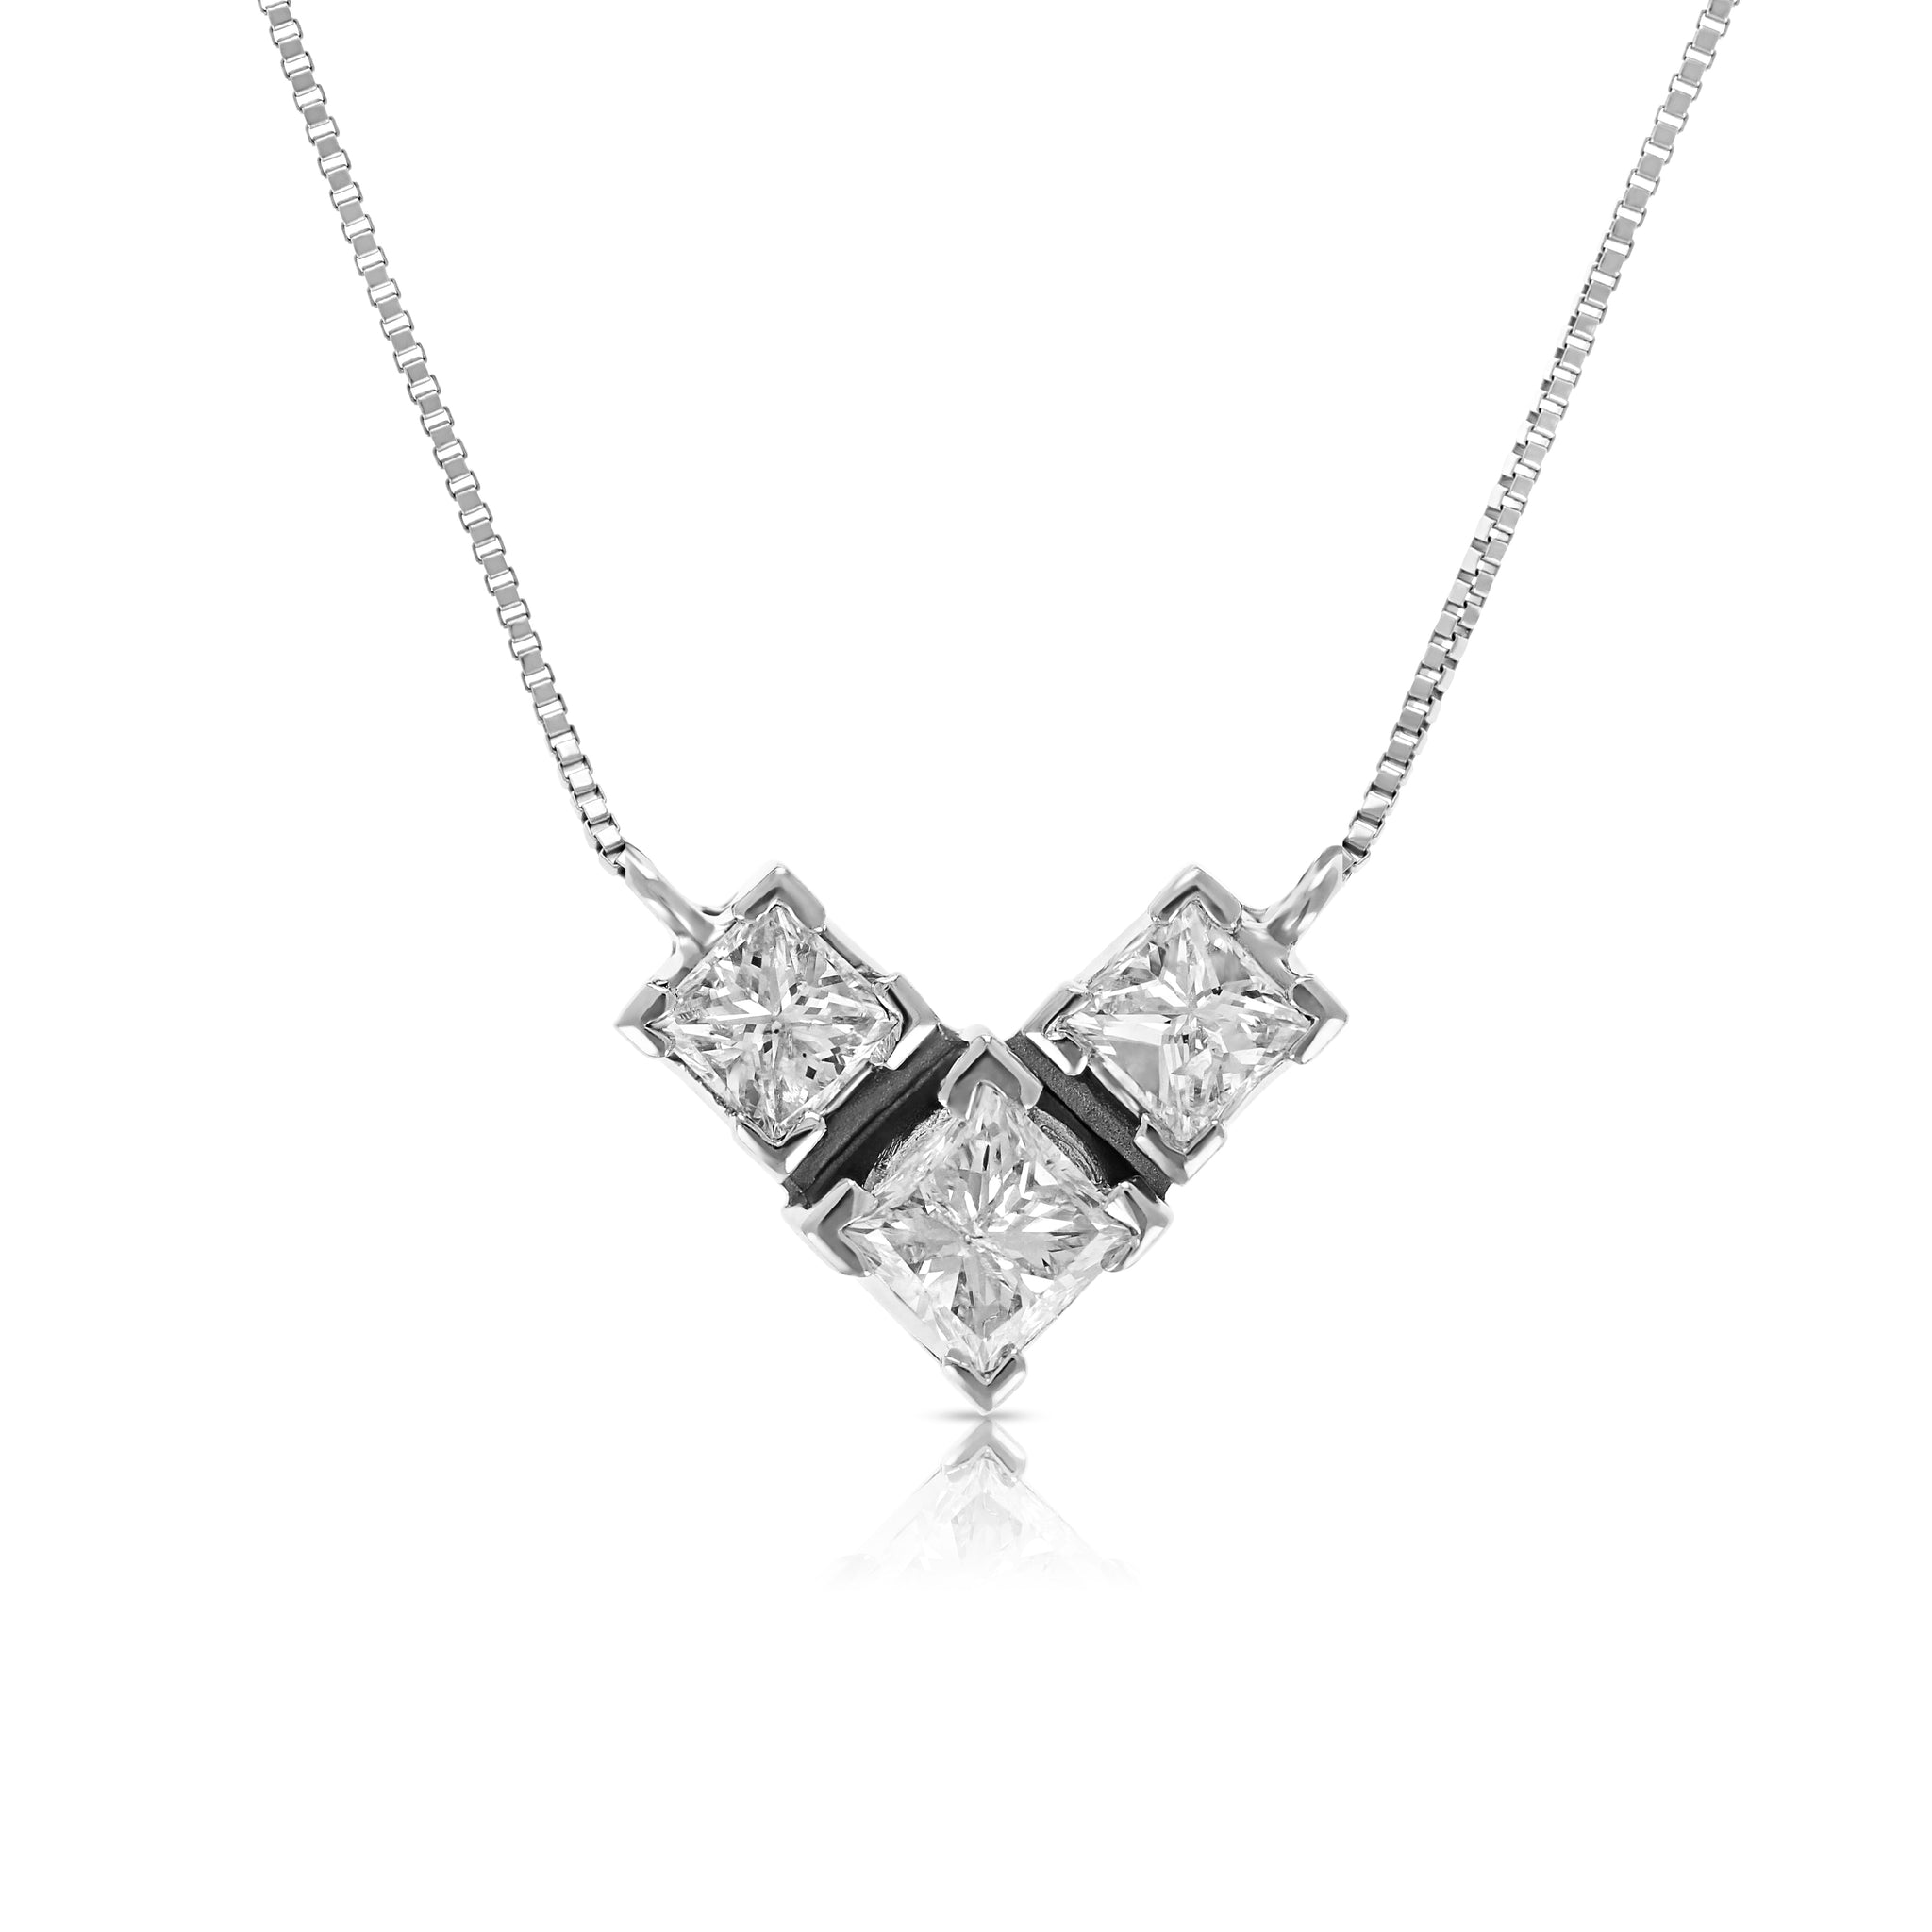 Diamond Bezel Necklace / 14k Gold Diamond Necklace 0.24cts / Bridal Diamond  Necklace / Floating Diamond / Dainty Diamond Necklace / Bridal - Etsy